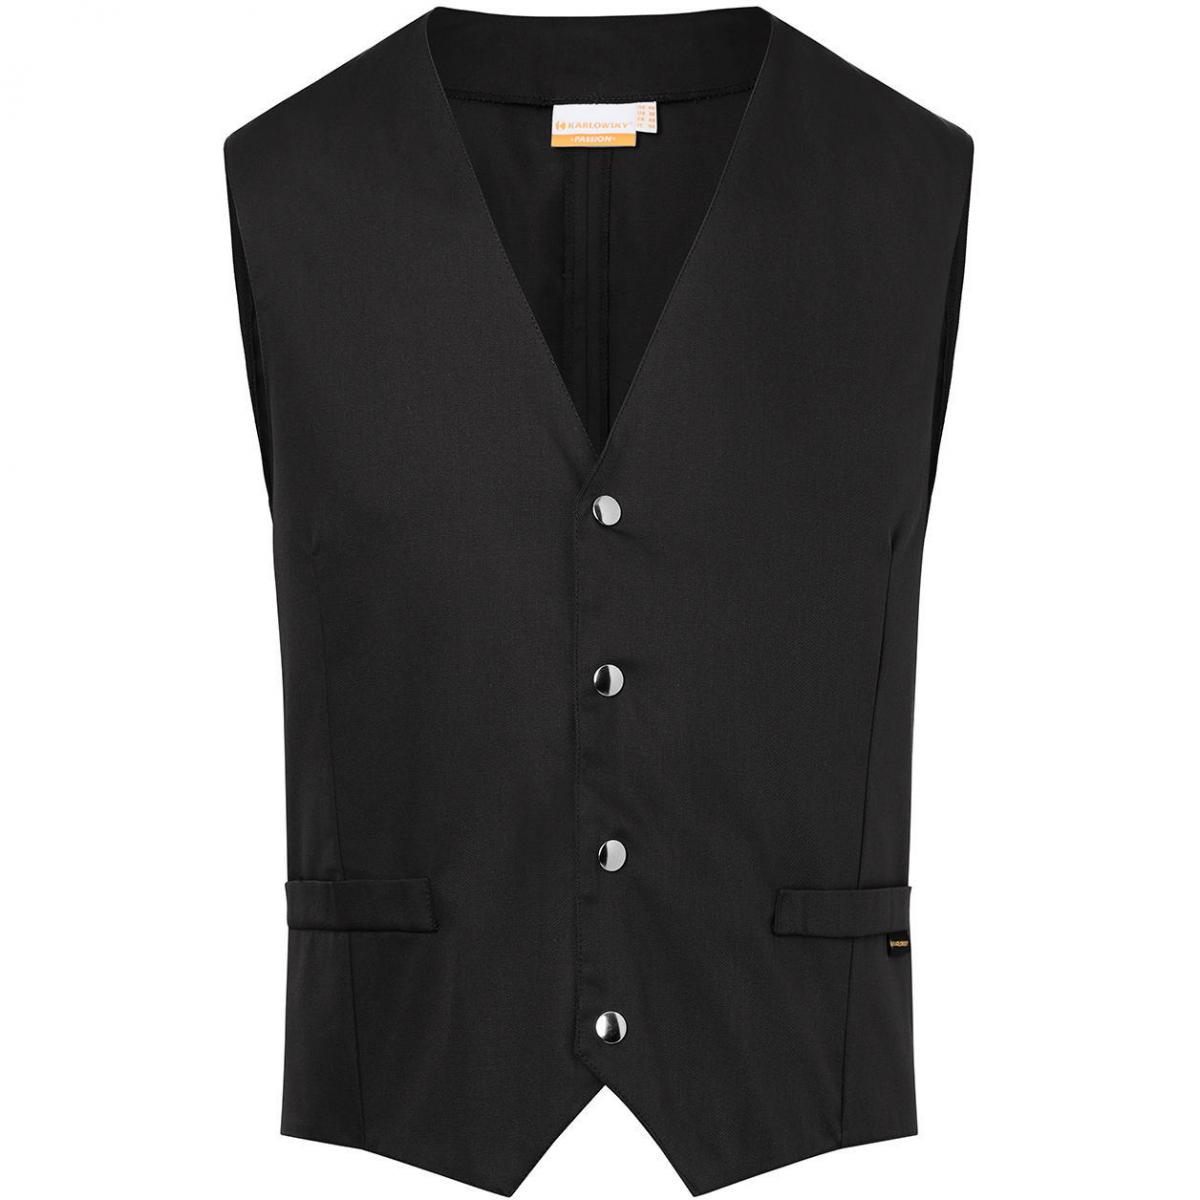 Hersteller: Karlowsky Herstellernummer: WM 2 Artikelbezeichnung: Men's Waistcoat Kai Industriewäsche tauglich Farbe: Black